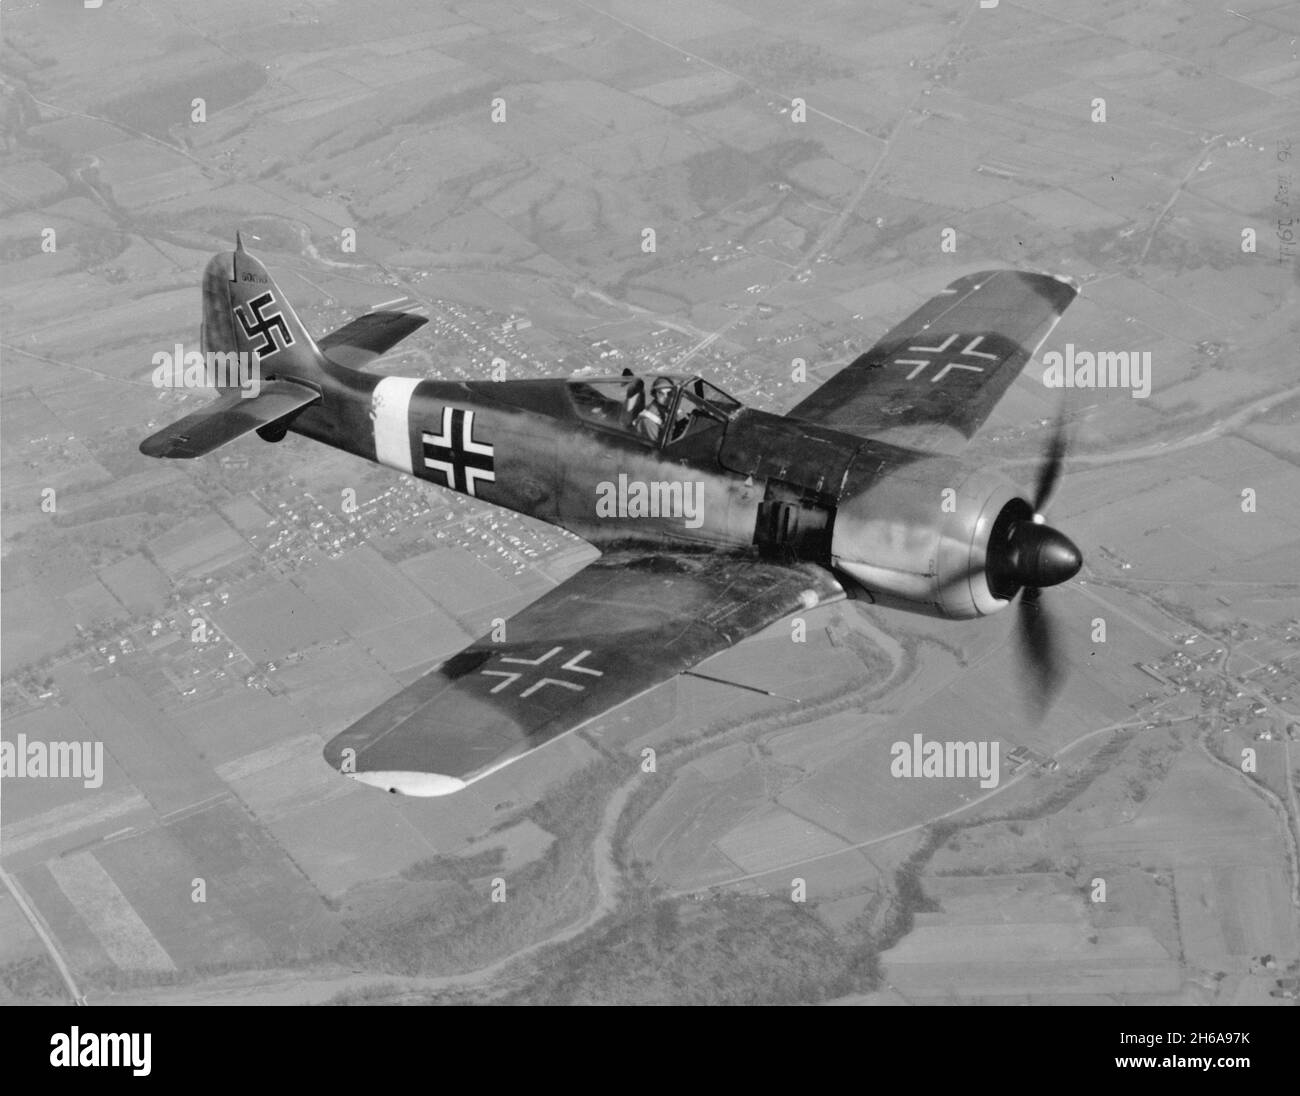 EUROPA - circa 1944 - Un Focke-Wulf FW-190 A-4/U4 in volo sull'Europa - questa è una versione ricognizione del formidabile combattente sviluppato dalla N Foto Stock